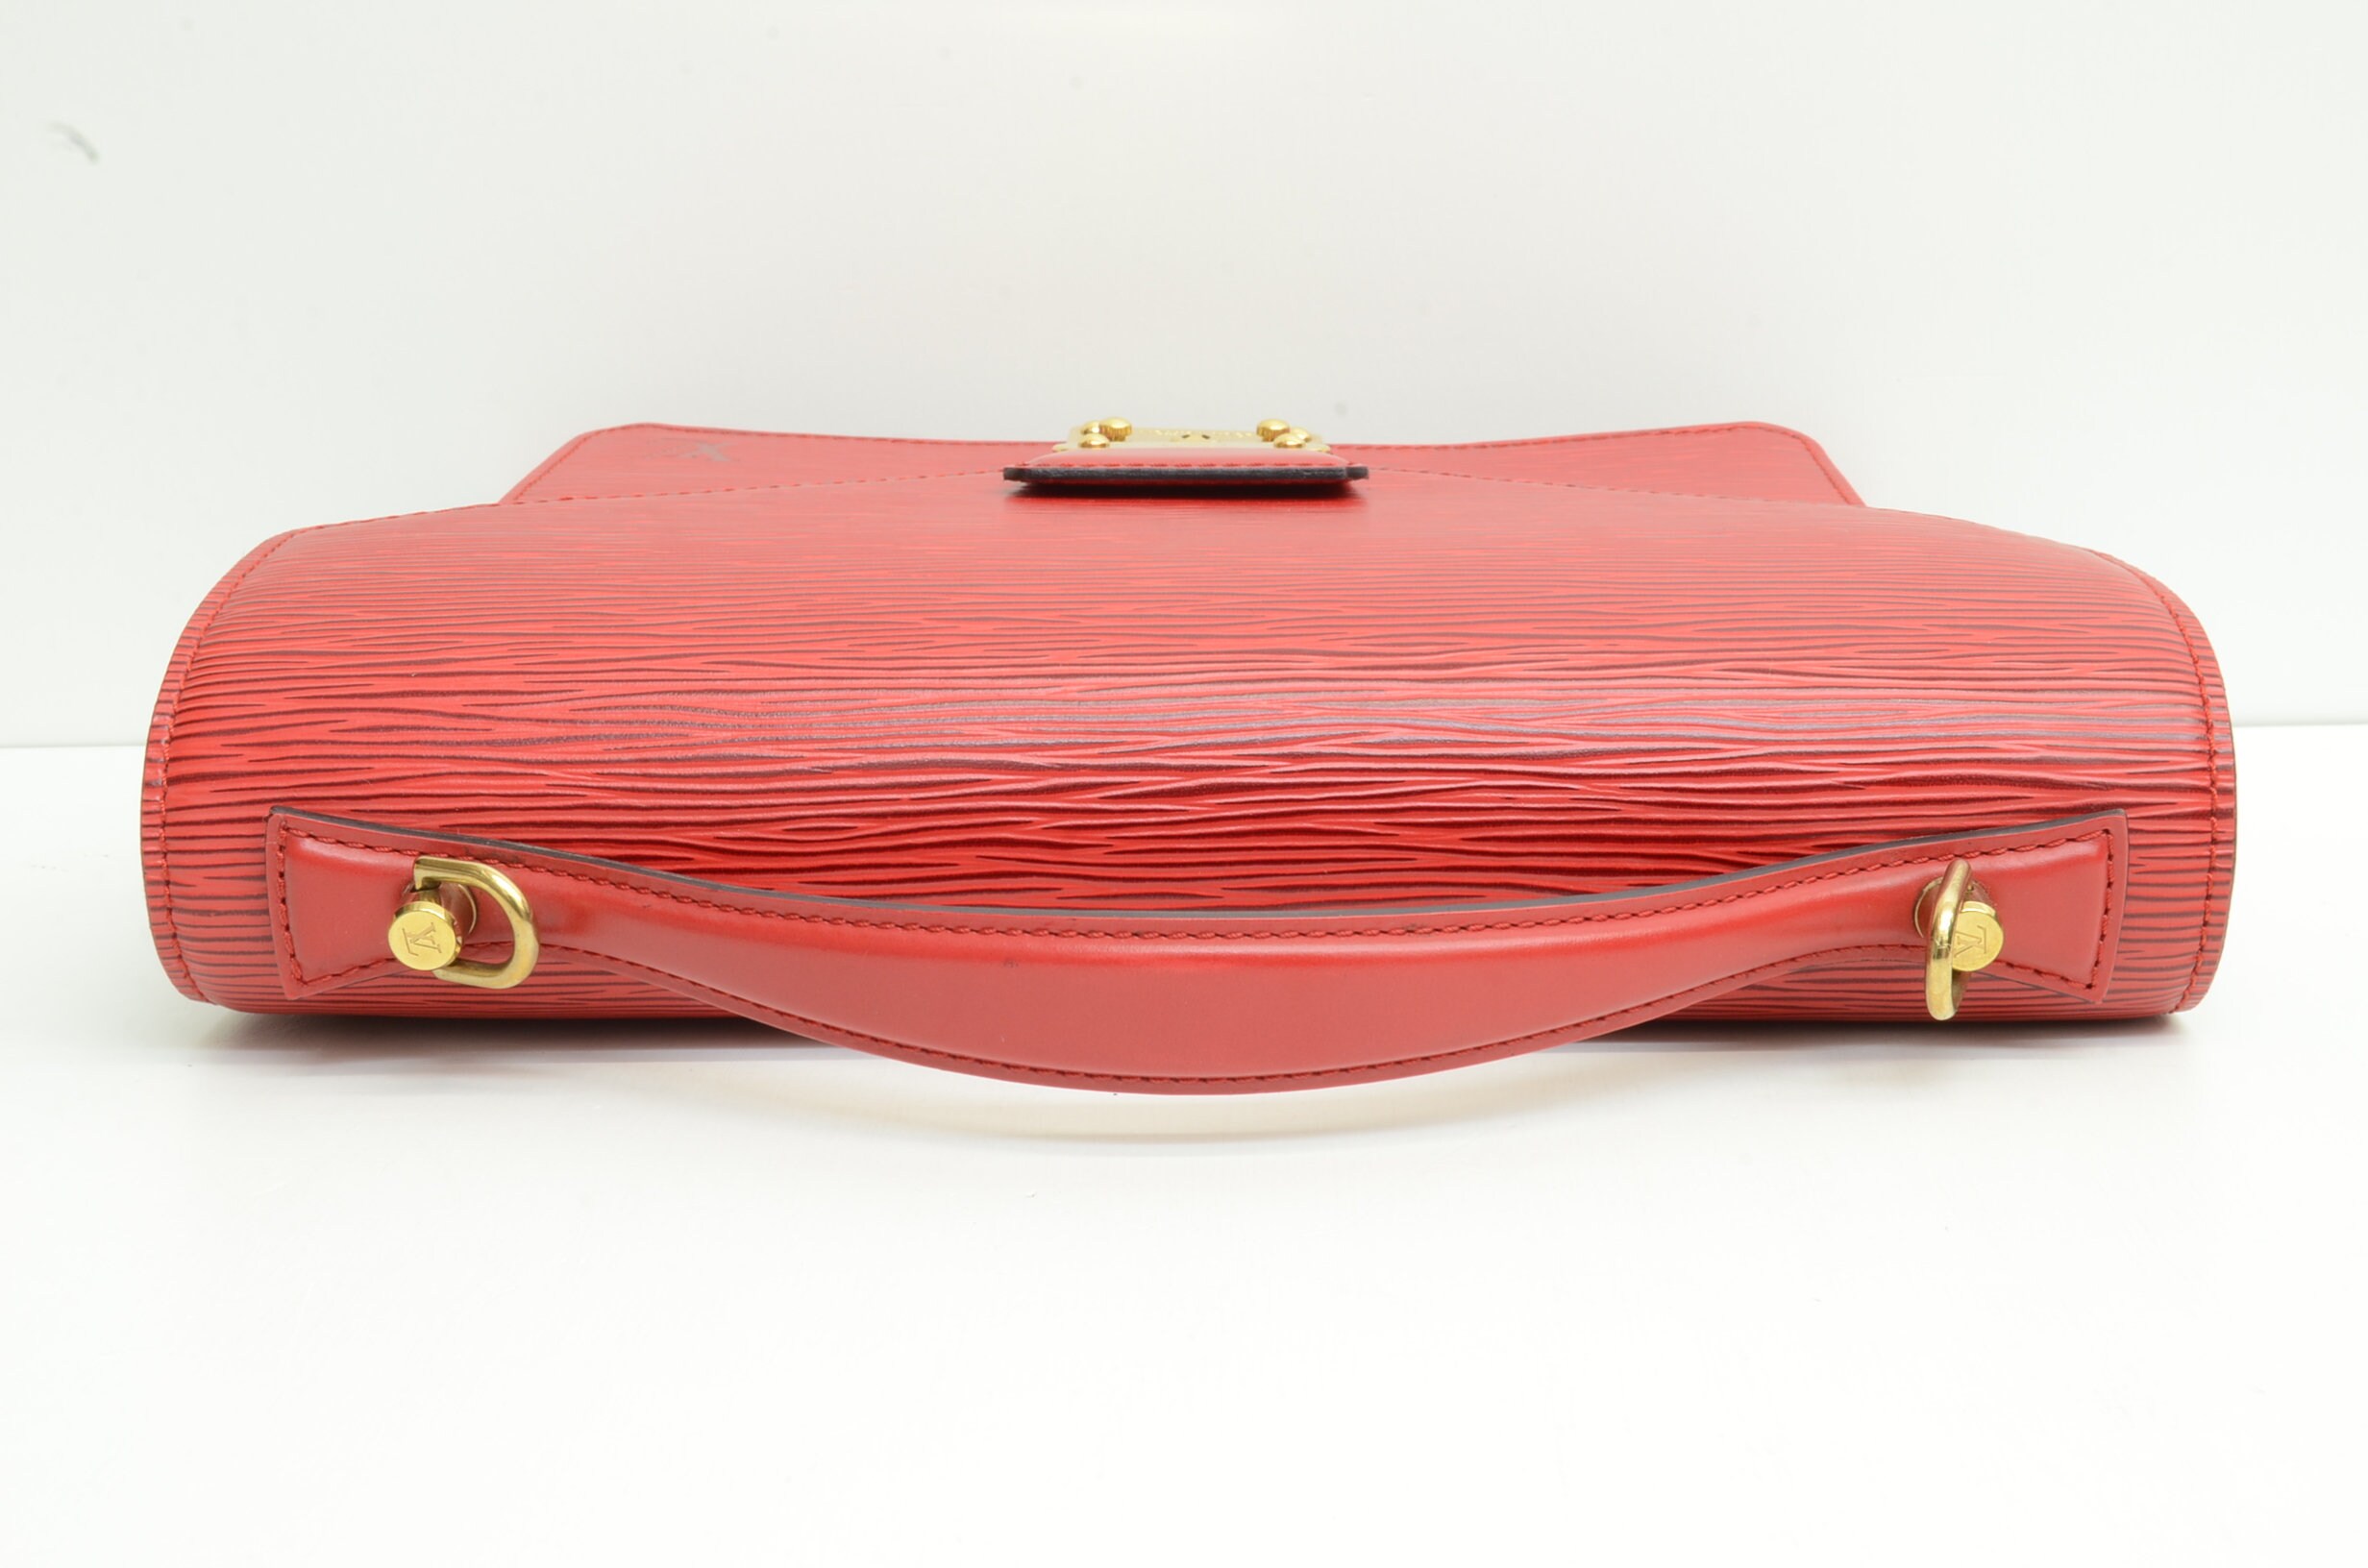 LOUIS VUITTON Monceau BB red epi leather bag - VALOIS VINTAGE PARIS